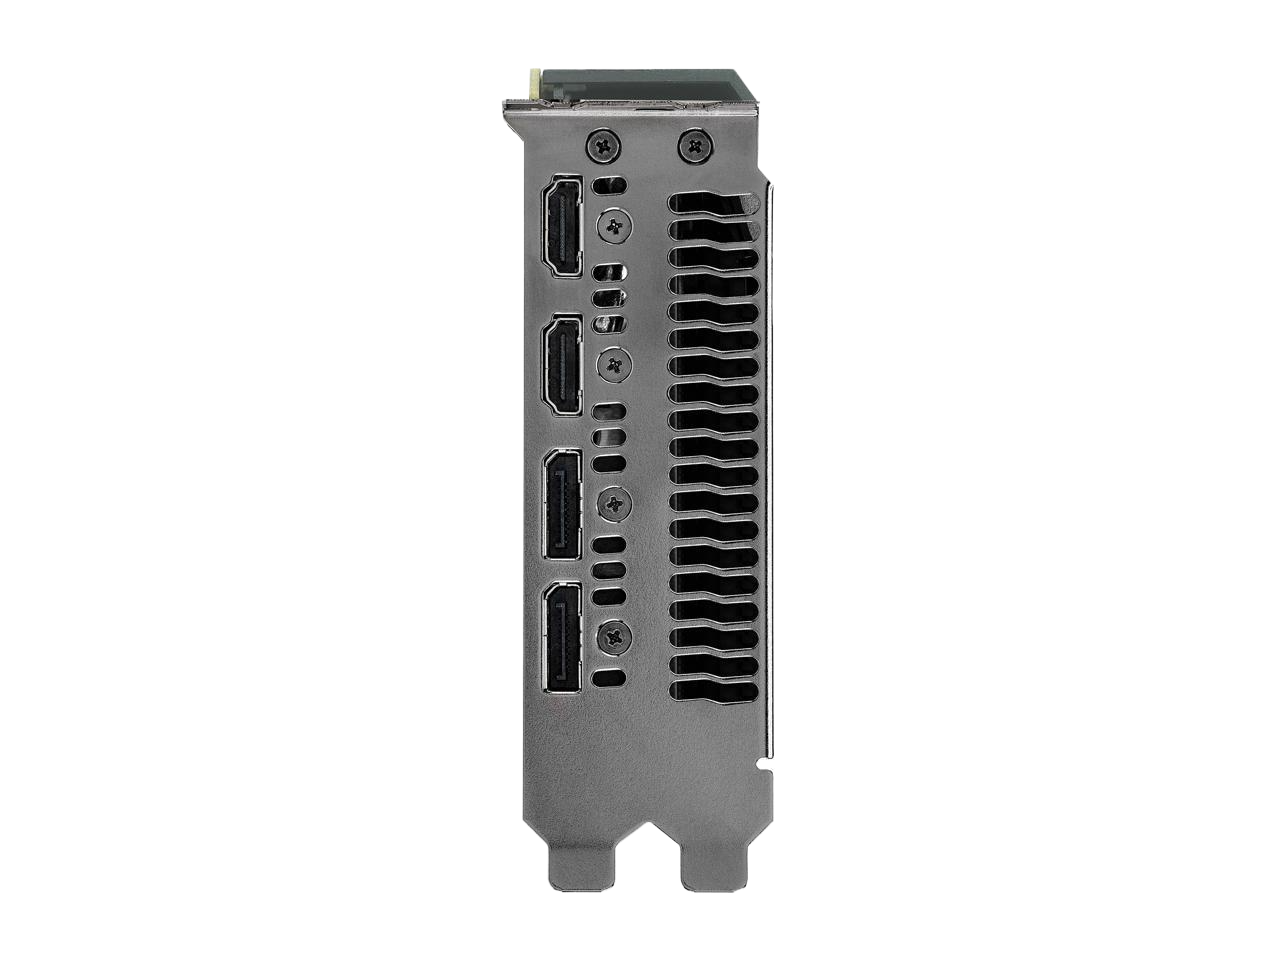 ASUS GeForce GTX 1080 Ti 11GB GDDR5X PCI Express 3.0 SLI Support Video Card TURBO-GTX1080TI-11G